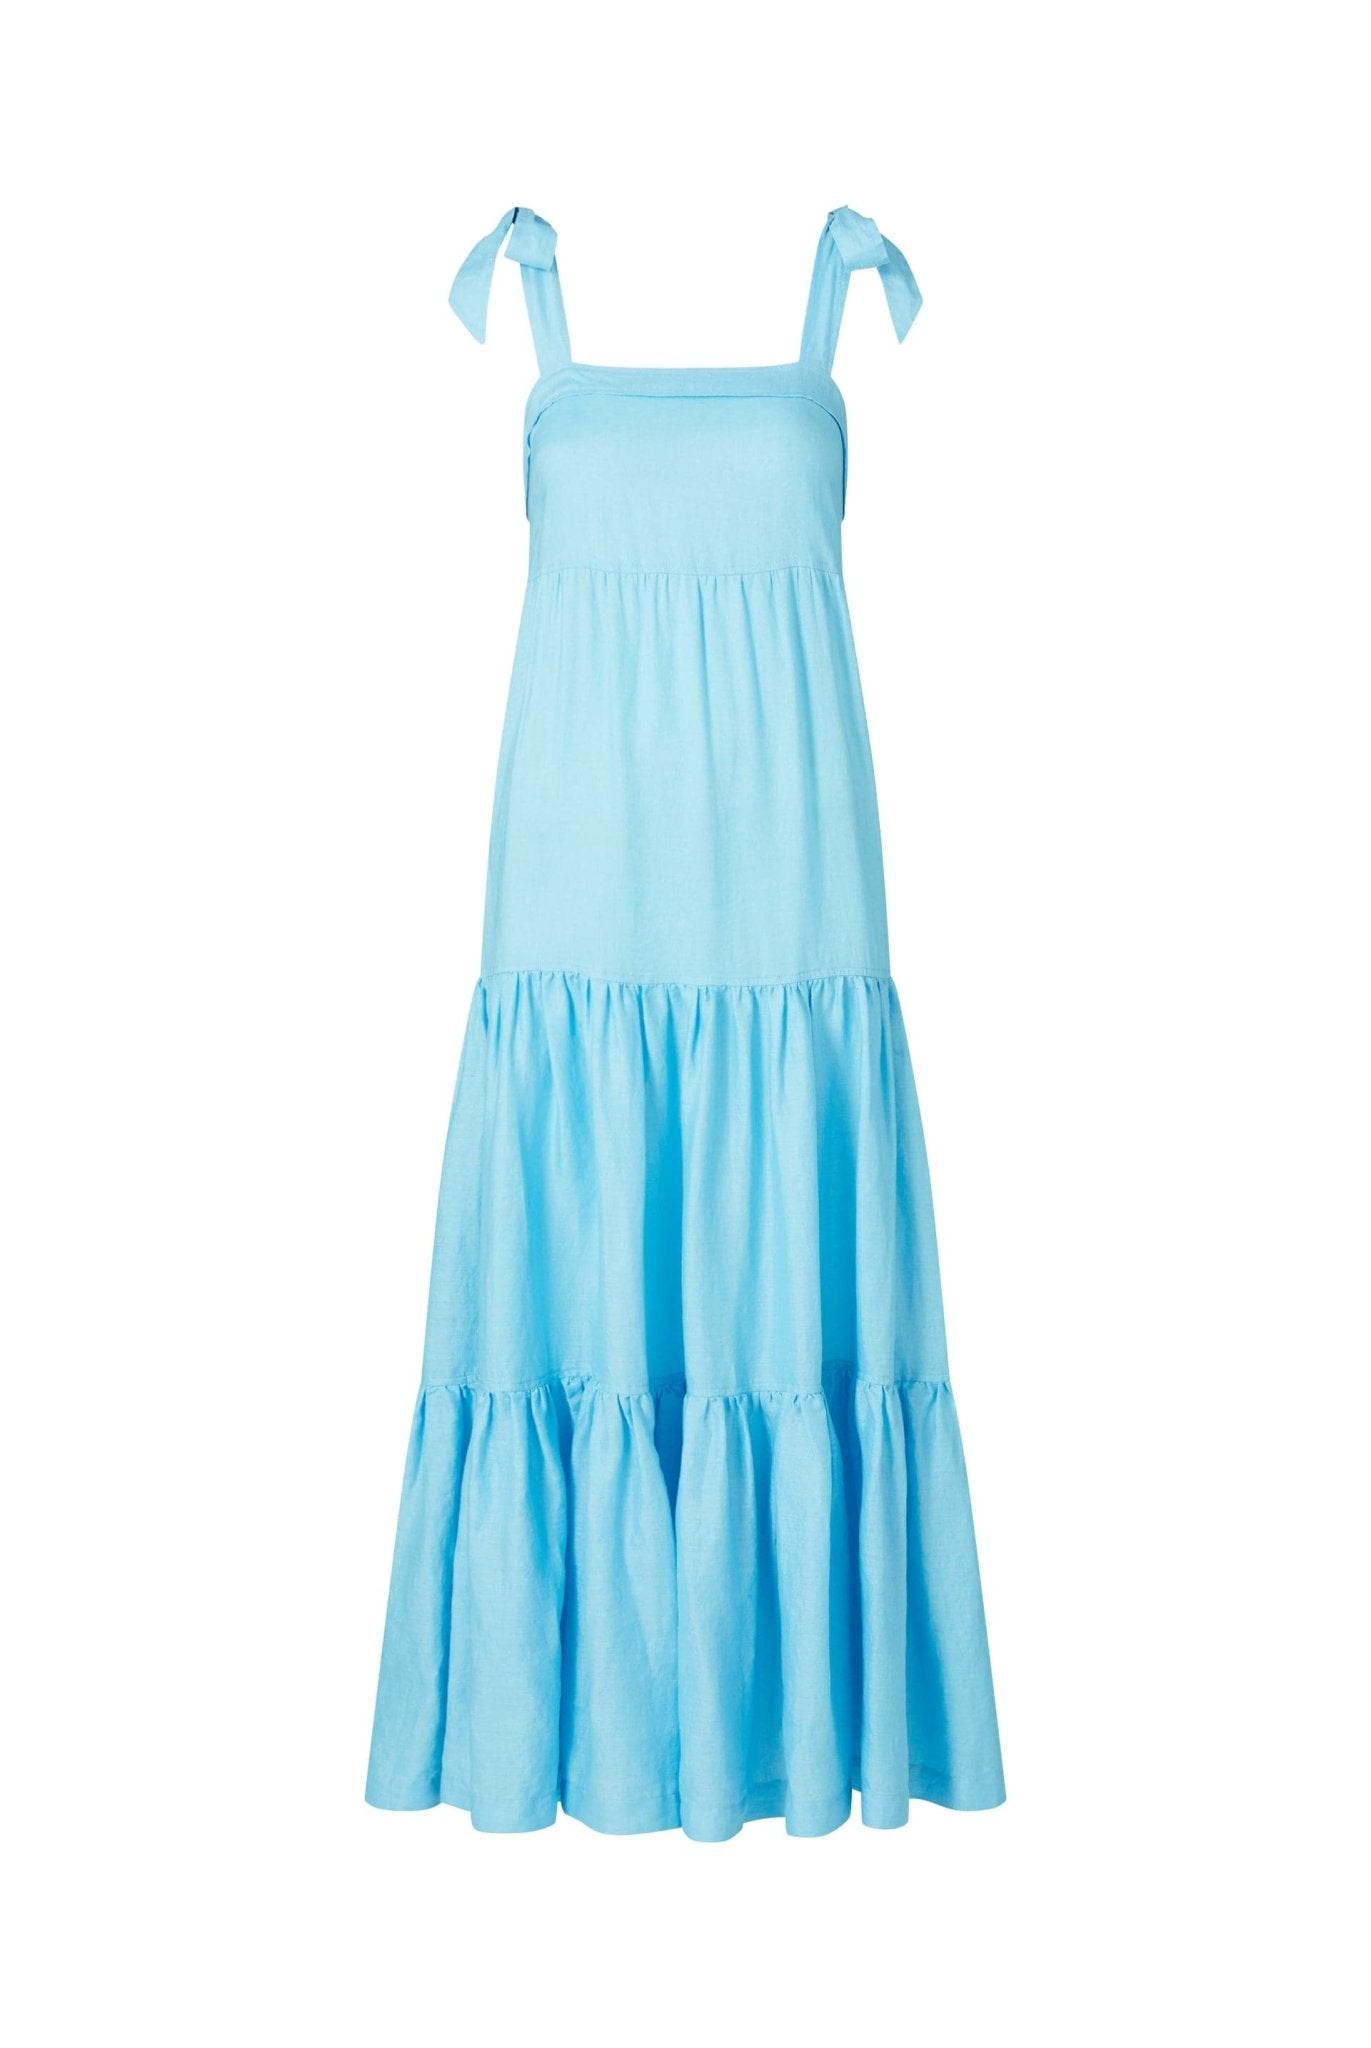 Nungwi Beach Tie Shoulder Maxi Dress in Blue - Heidi Klein - UK Store